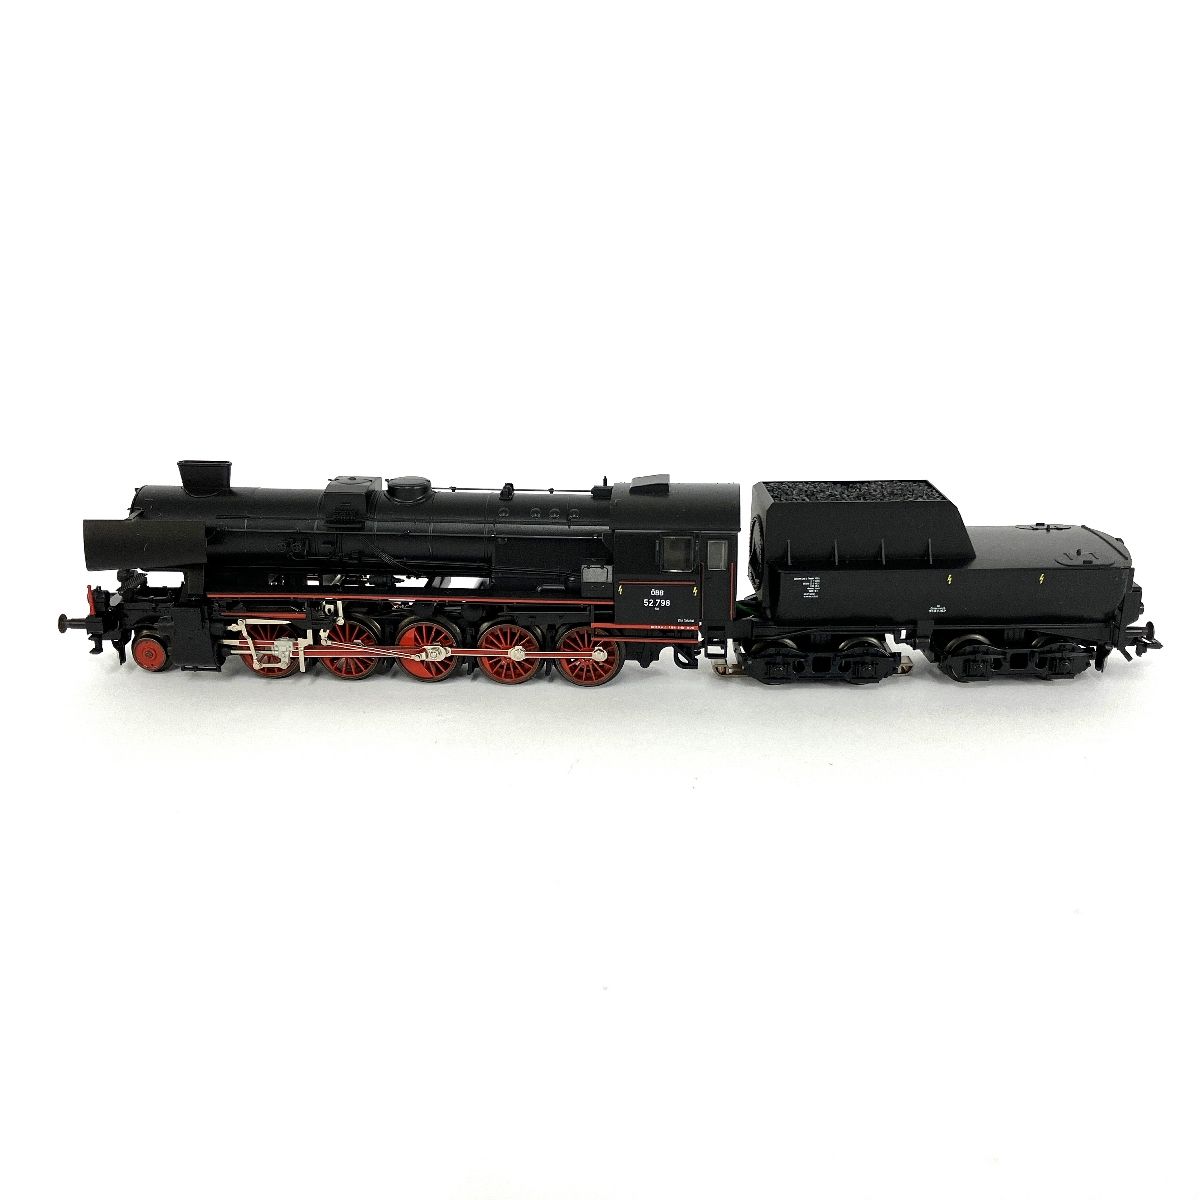 超格安価格 Marklin メルクリン 3416 BR 52 OBB 蒸気機関車 鉄道模型 